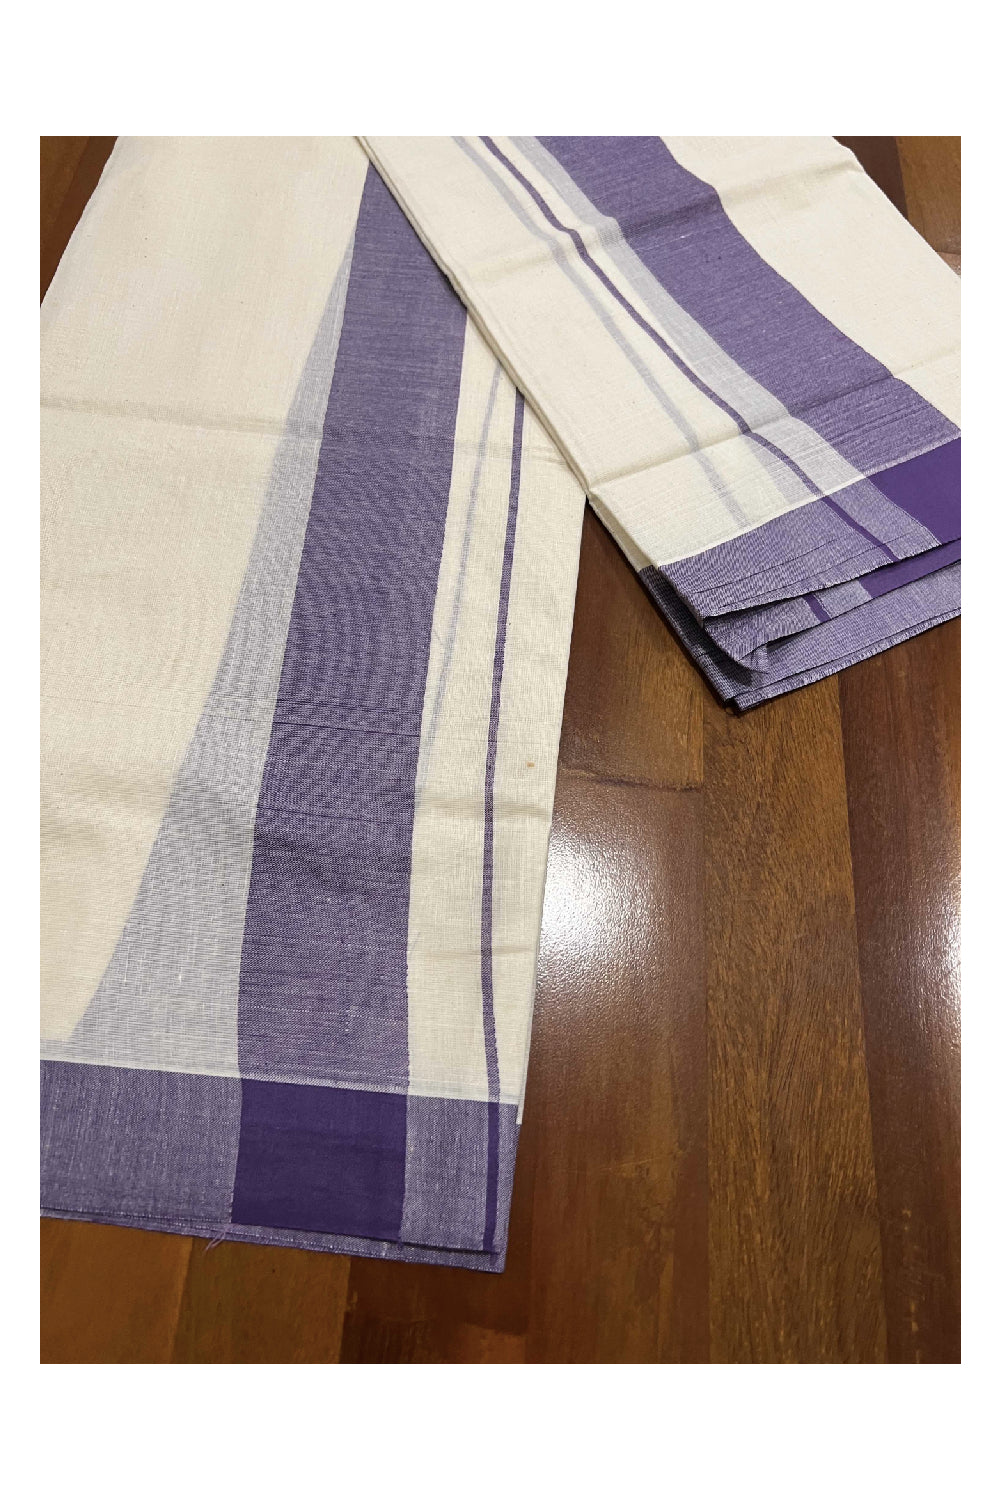 Kerala Cotton Mundum Neriyathum Single (Set Mundu) with Violet Mulloth Border (Extra Soft Cotton)